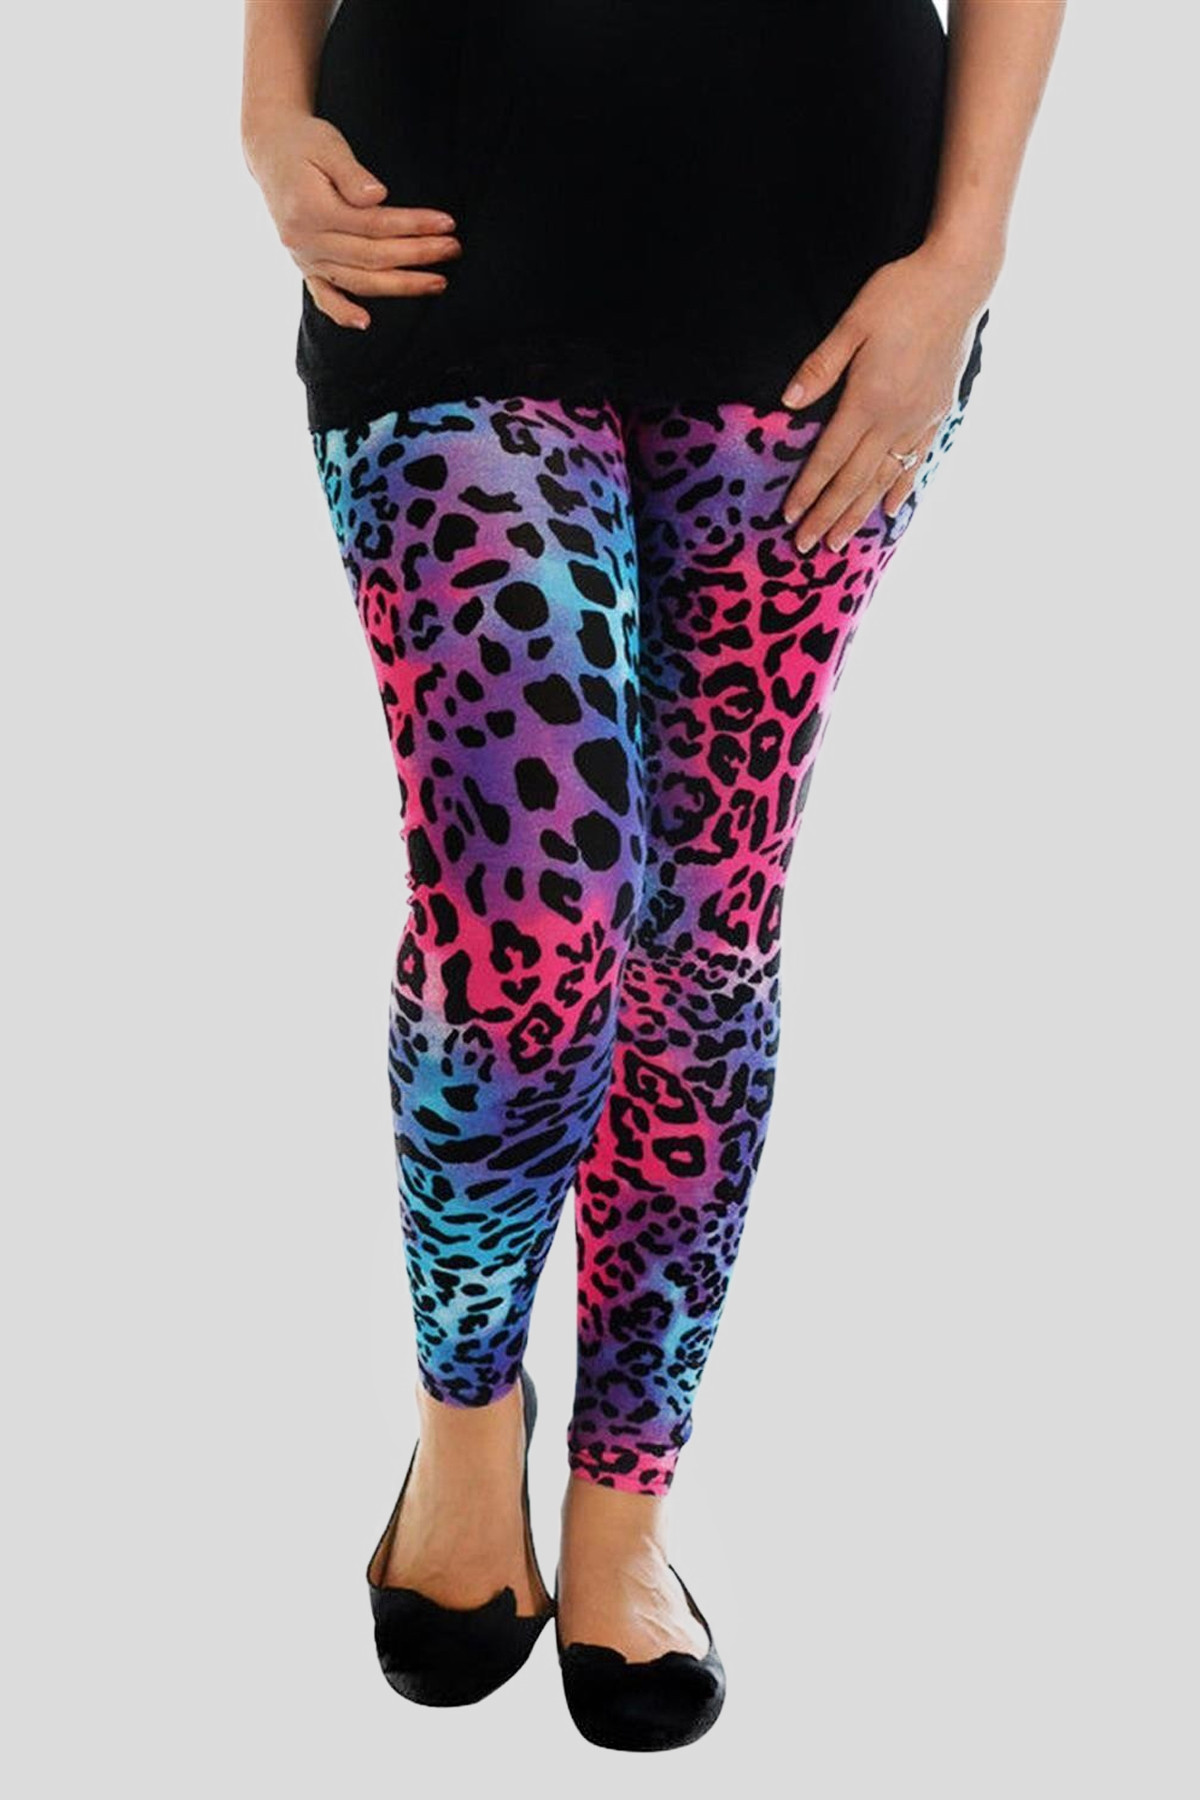 Katie Plus Size Faith Multicolor Leopard Print Leggings 16-26